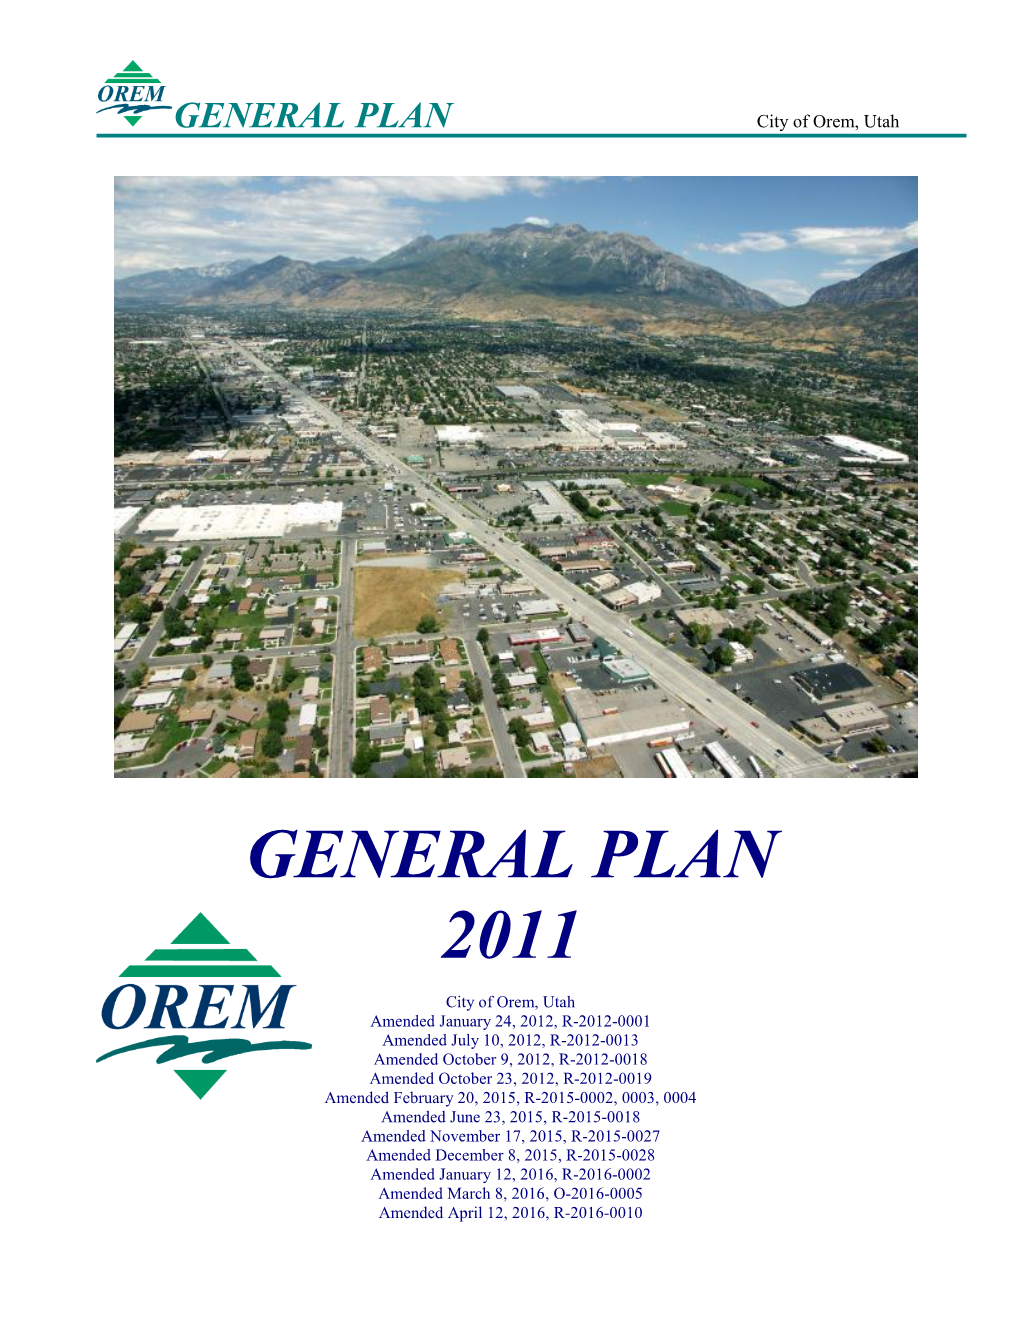 General Plan 2011